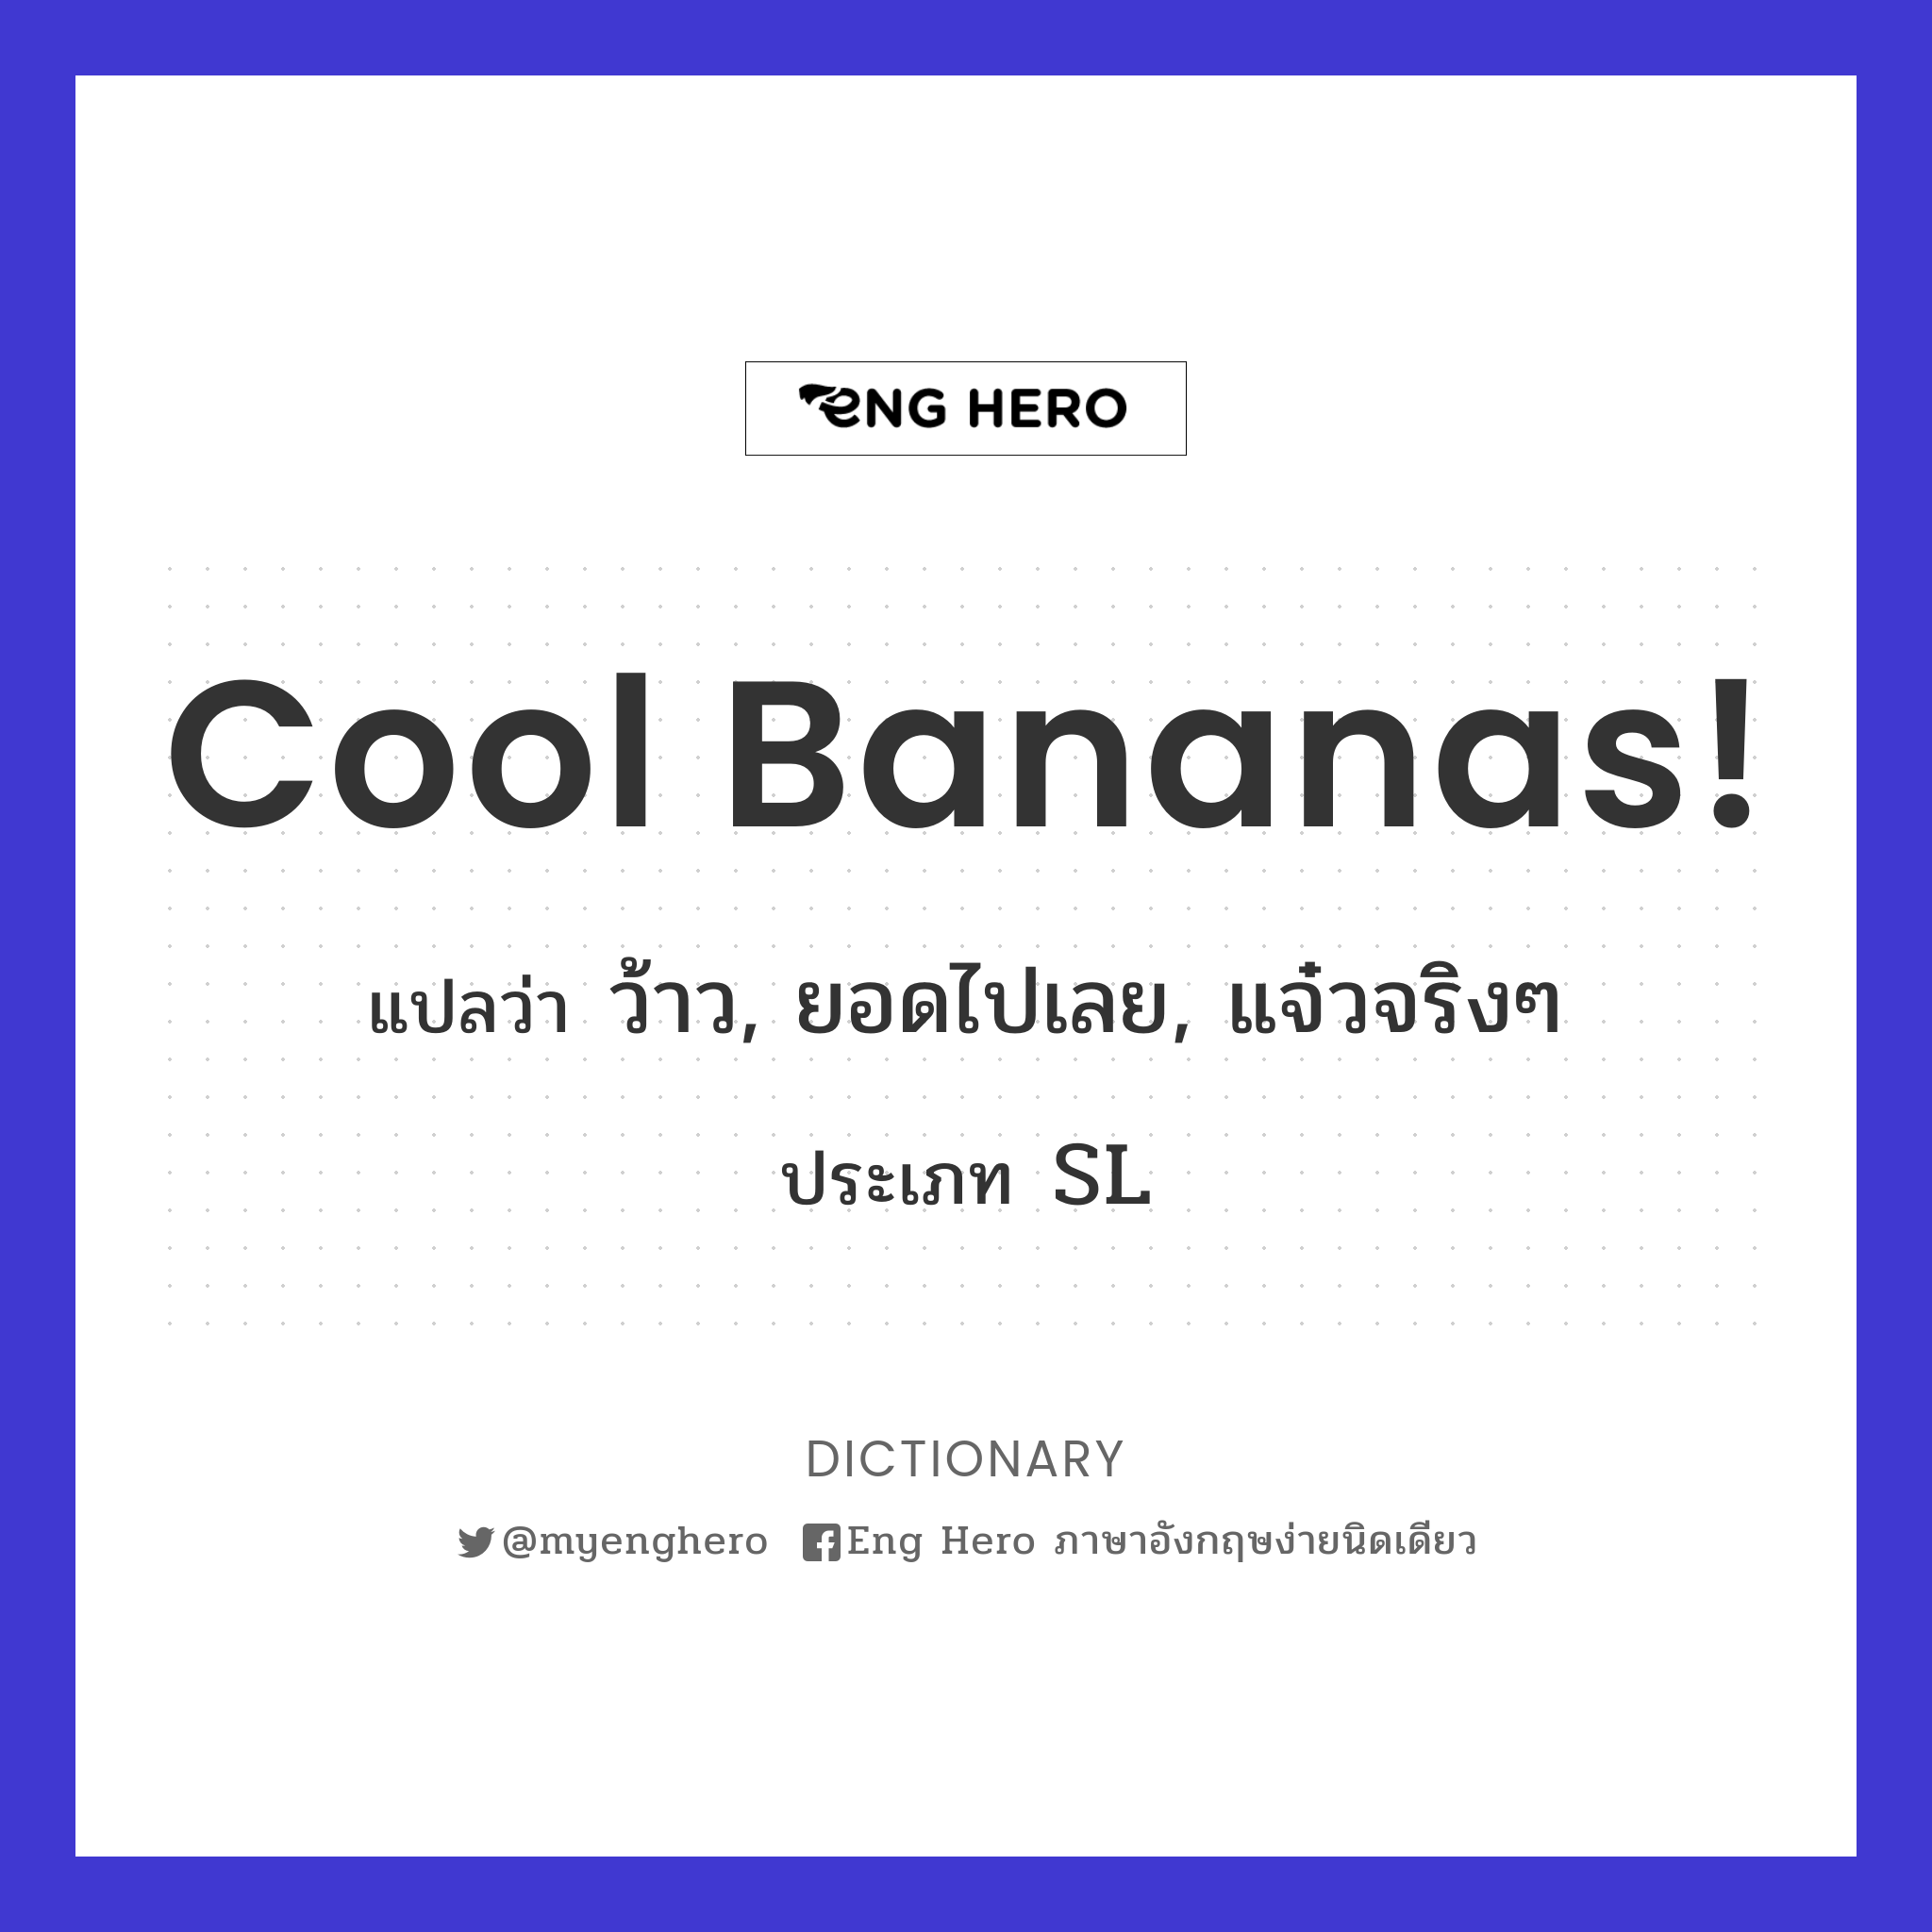 Cool bananas!